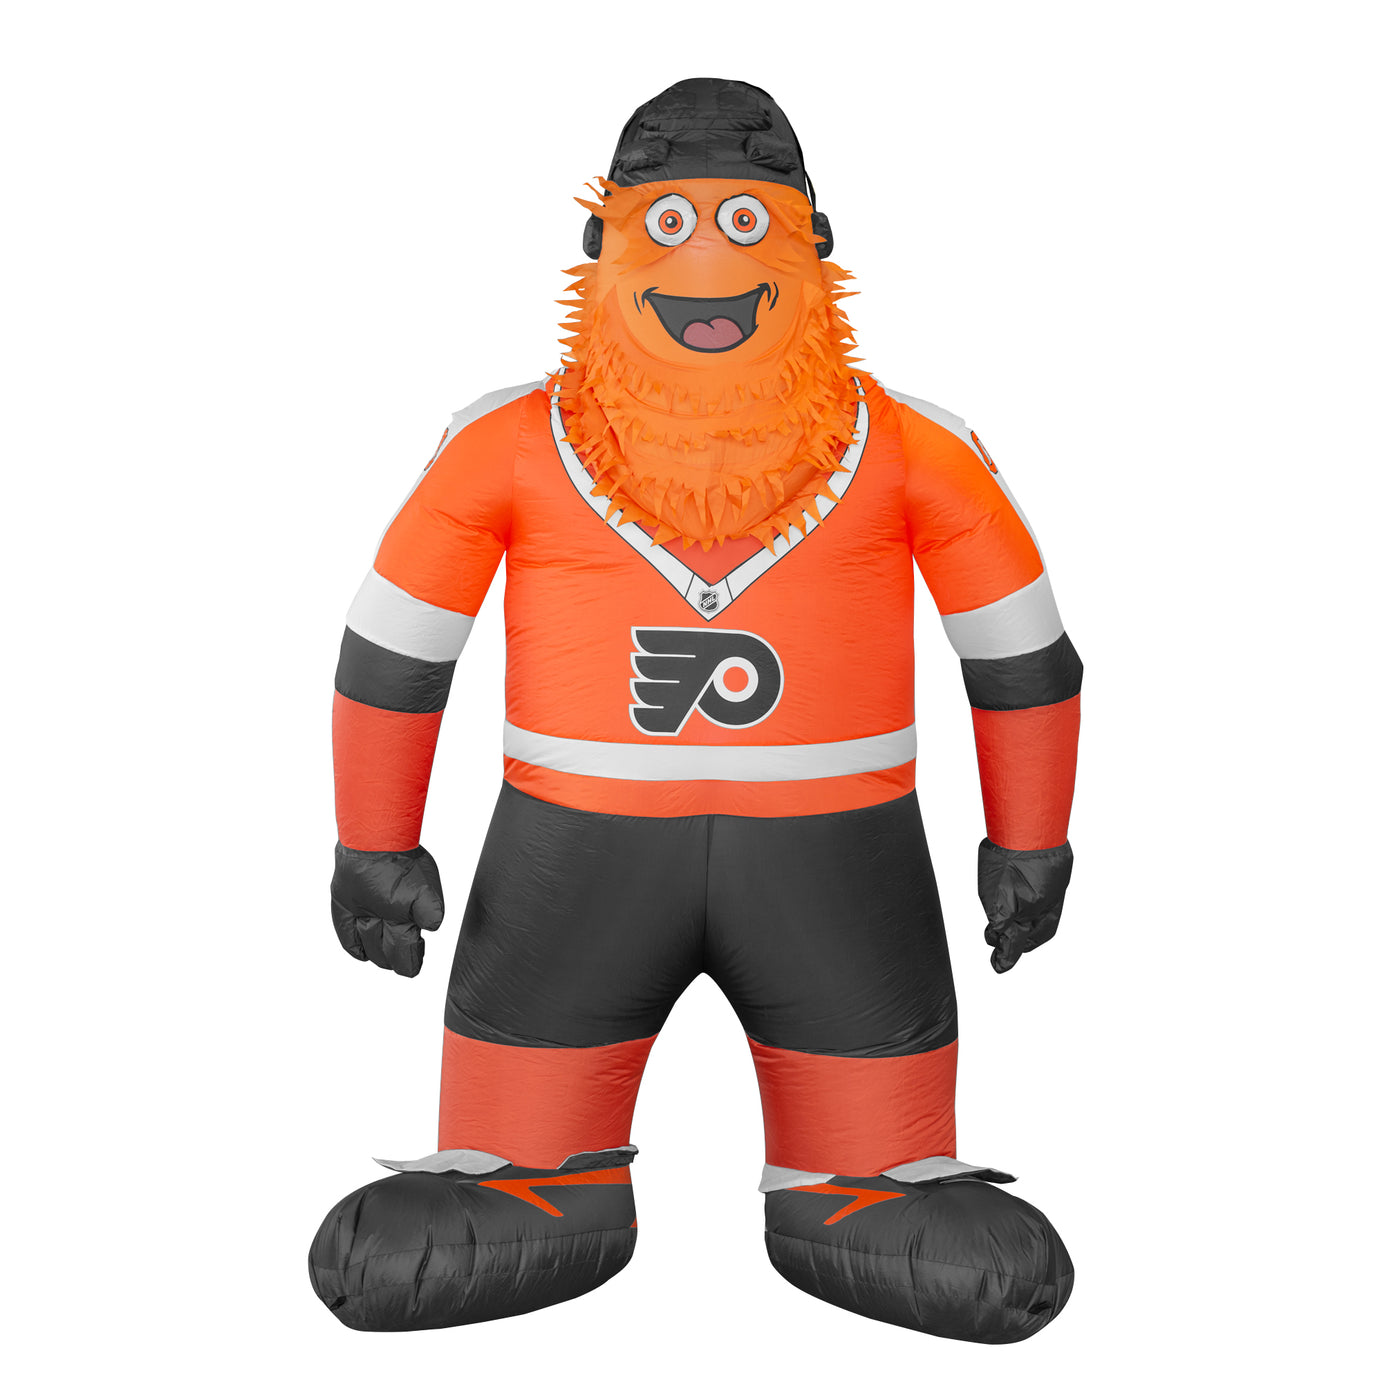 Philadelphia Flyers Inflatable Mascot